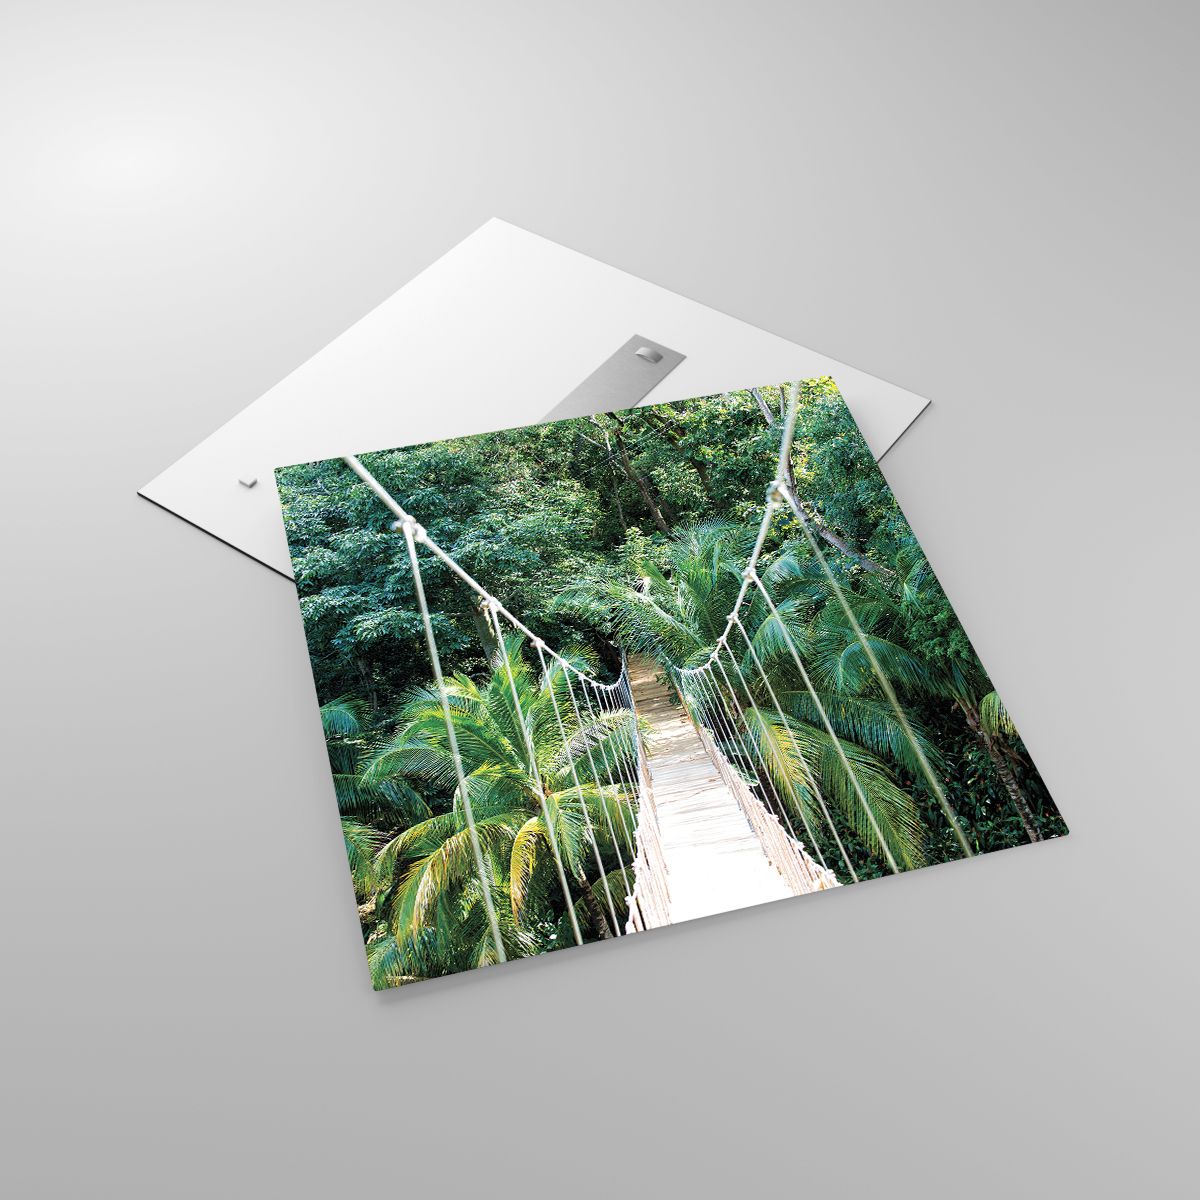 Glasbild Landschaft, Glasbild Urwald, Glasbild Honduras, Glasbild Hängende Brücke, Glasbild Natur